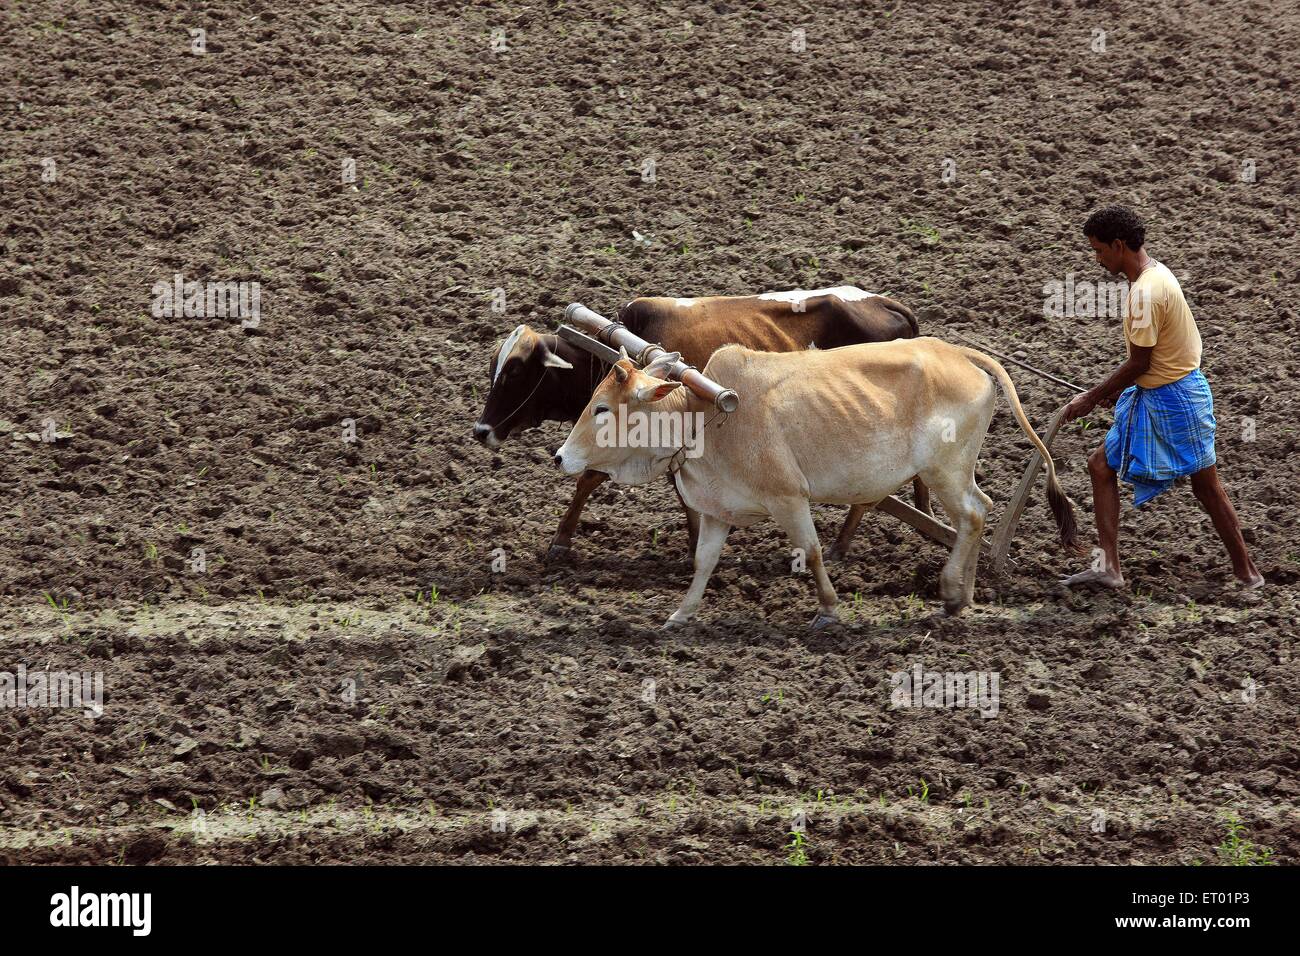 Agriculteur assamais labourant le champ avec des taureaux Assam Inde agriculteurs indiens Banque D'Images